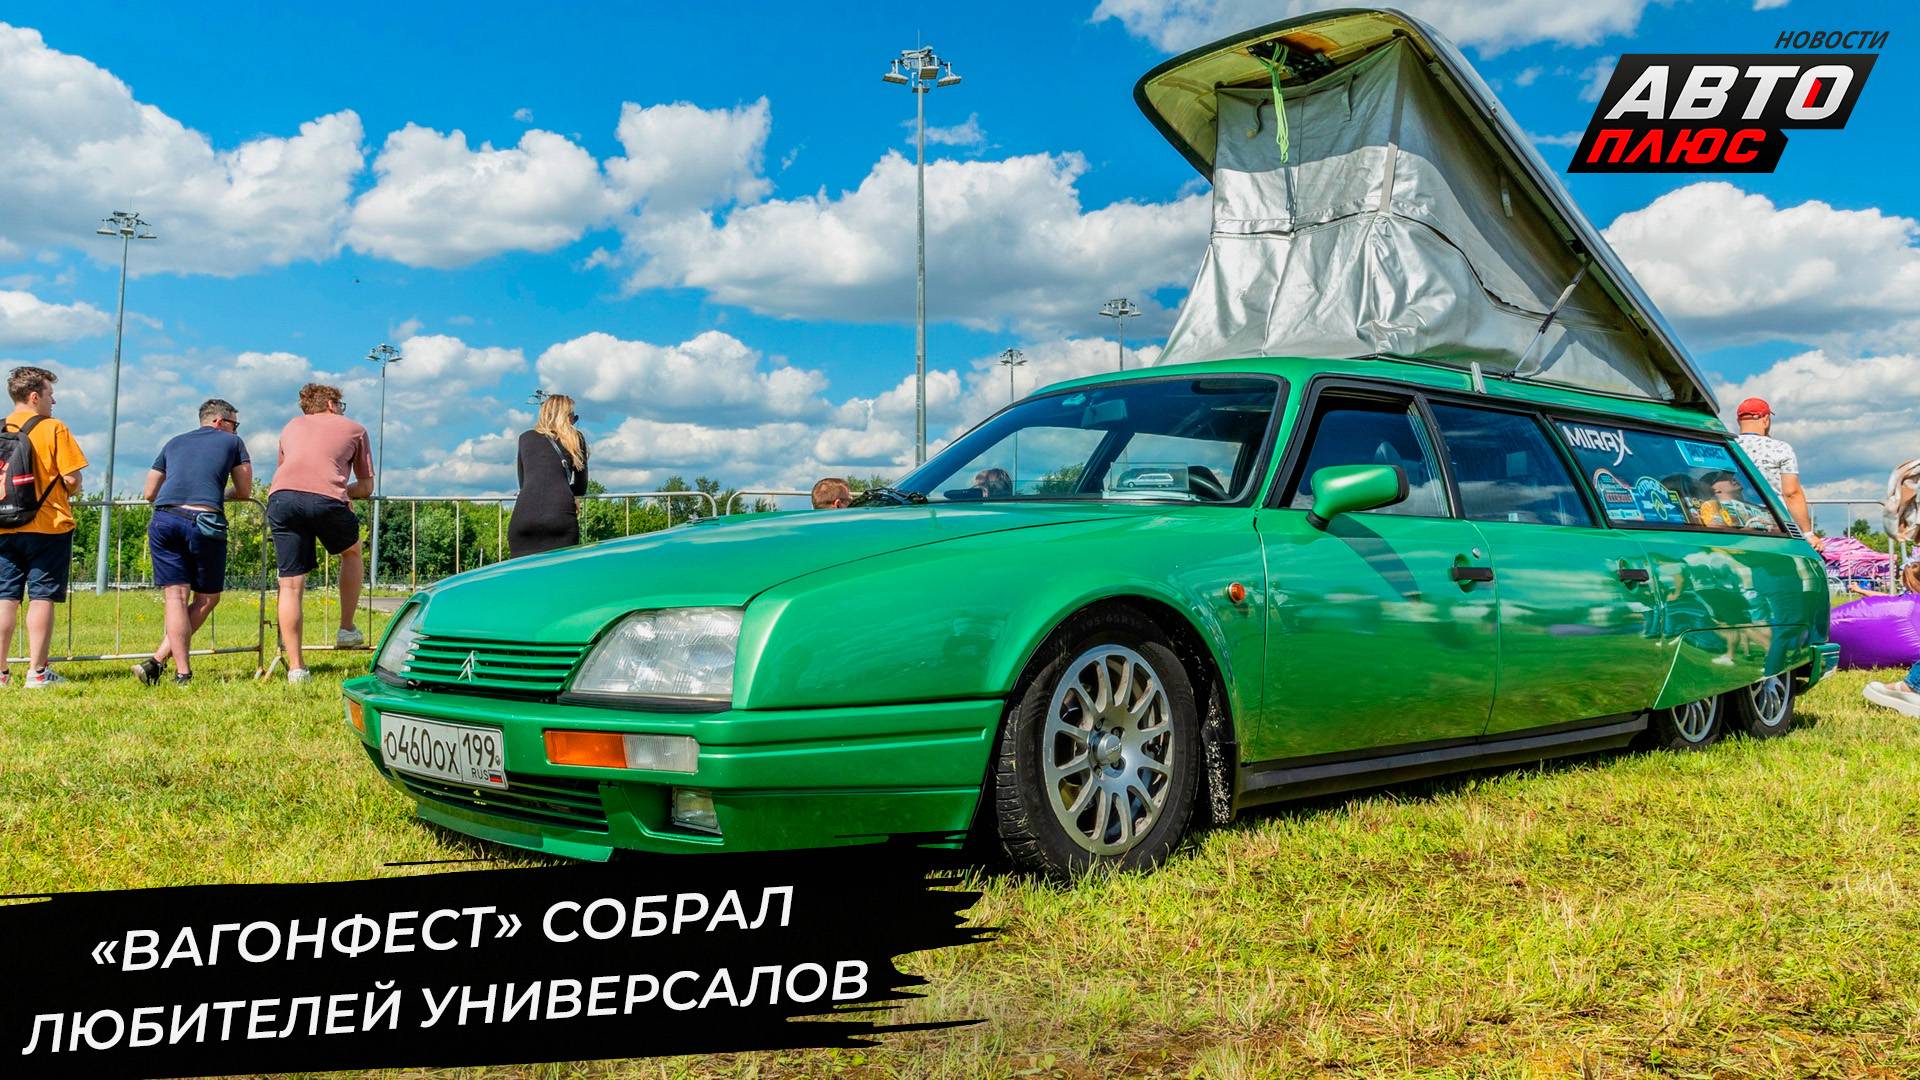 «Вагонфест» собрал любителей универсалов 📺 Новости с колёс №2972